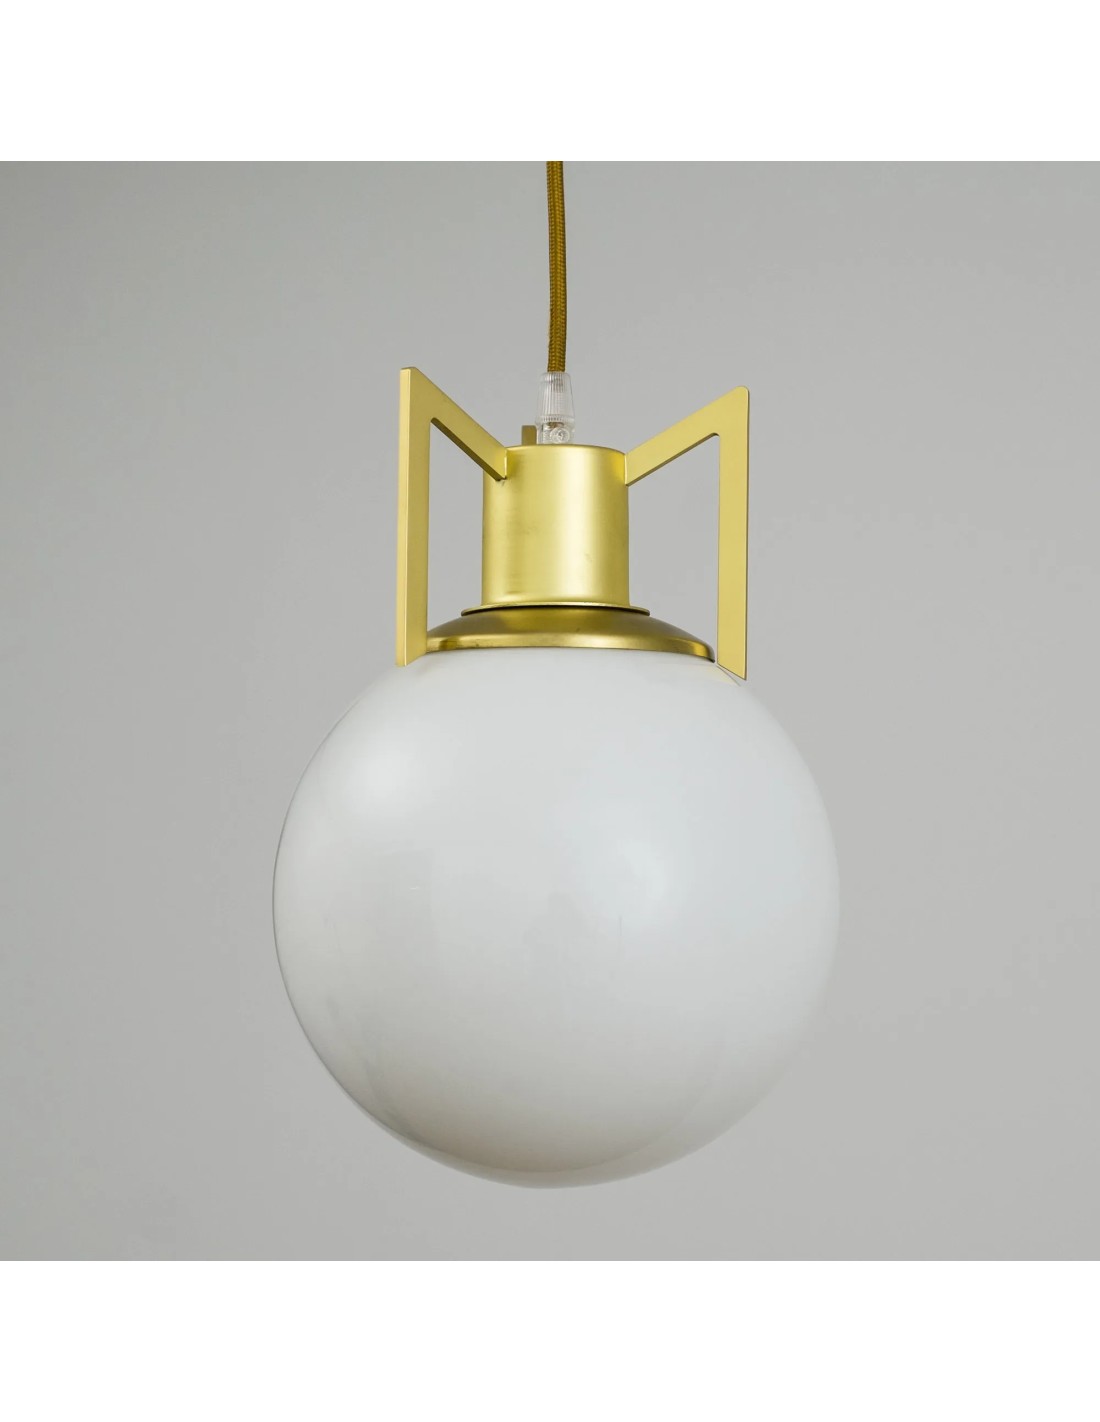 lámparas de techo vintage con bolas de cristal inspiración retro vintage con cierto toque de diseño industrial